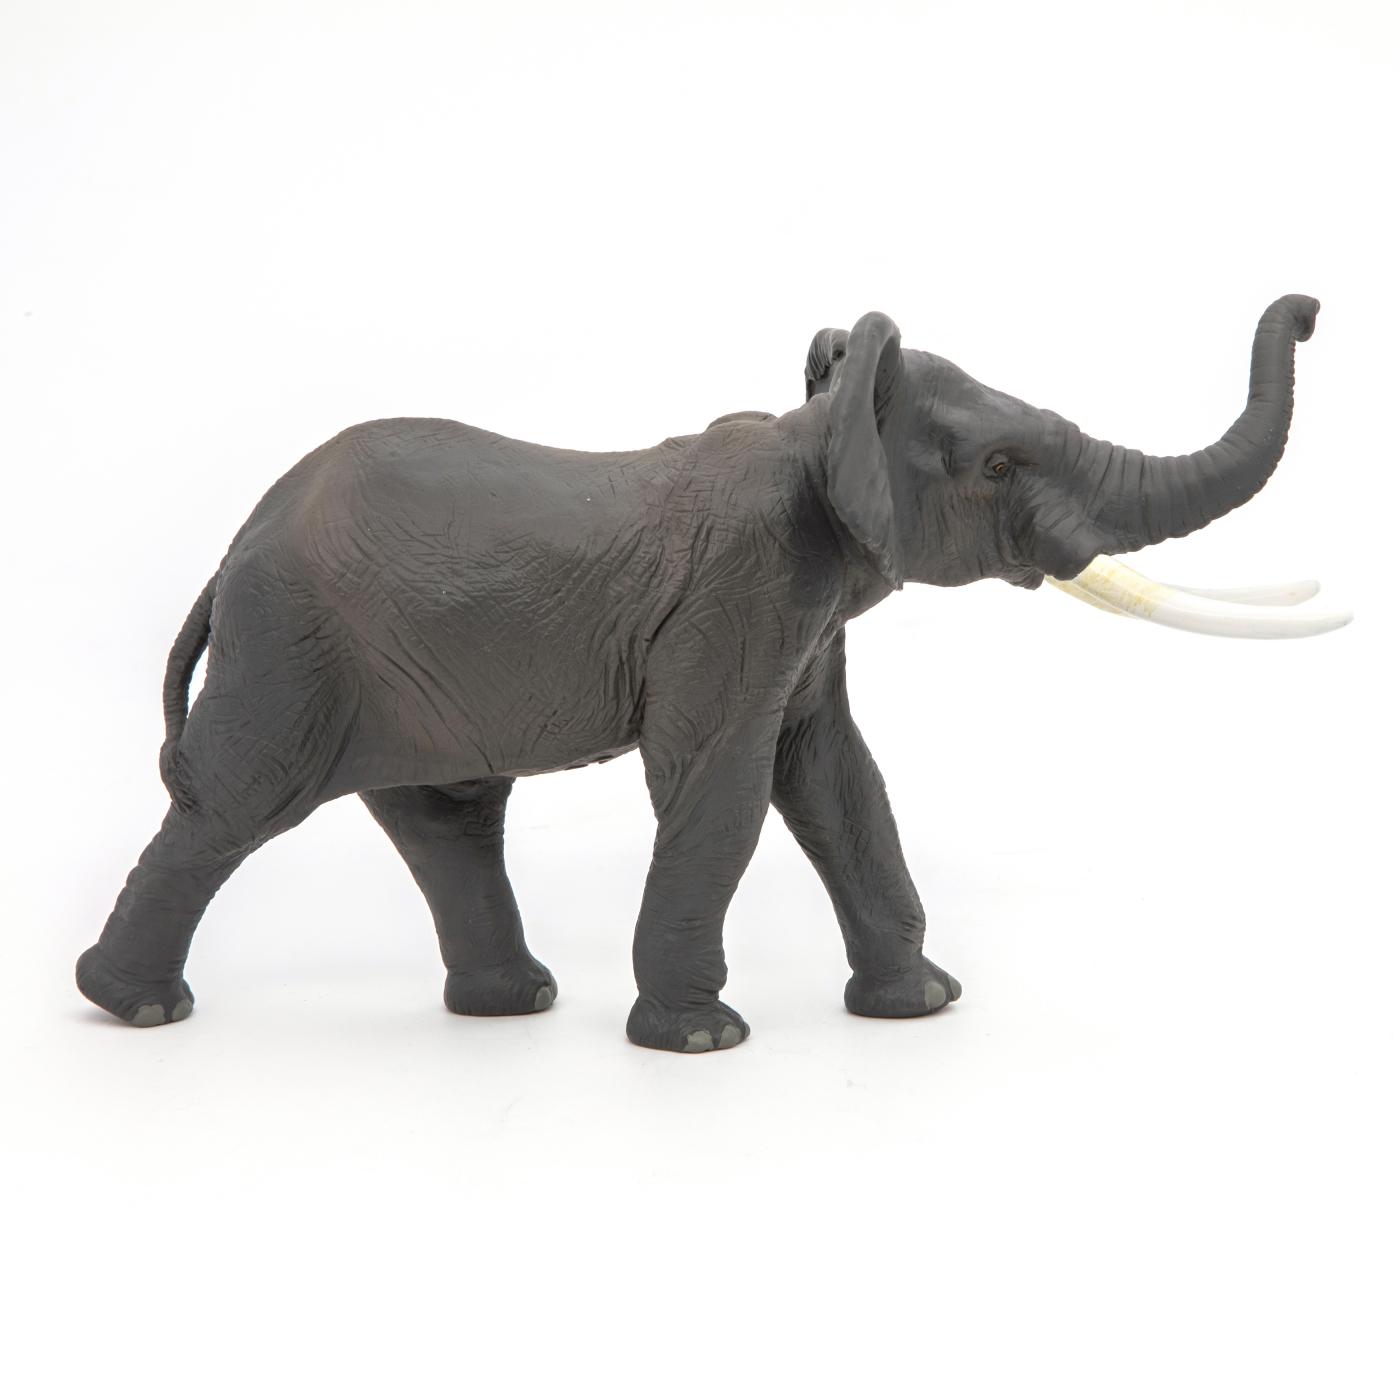 Elephant figure Papo 50215 